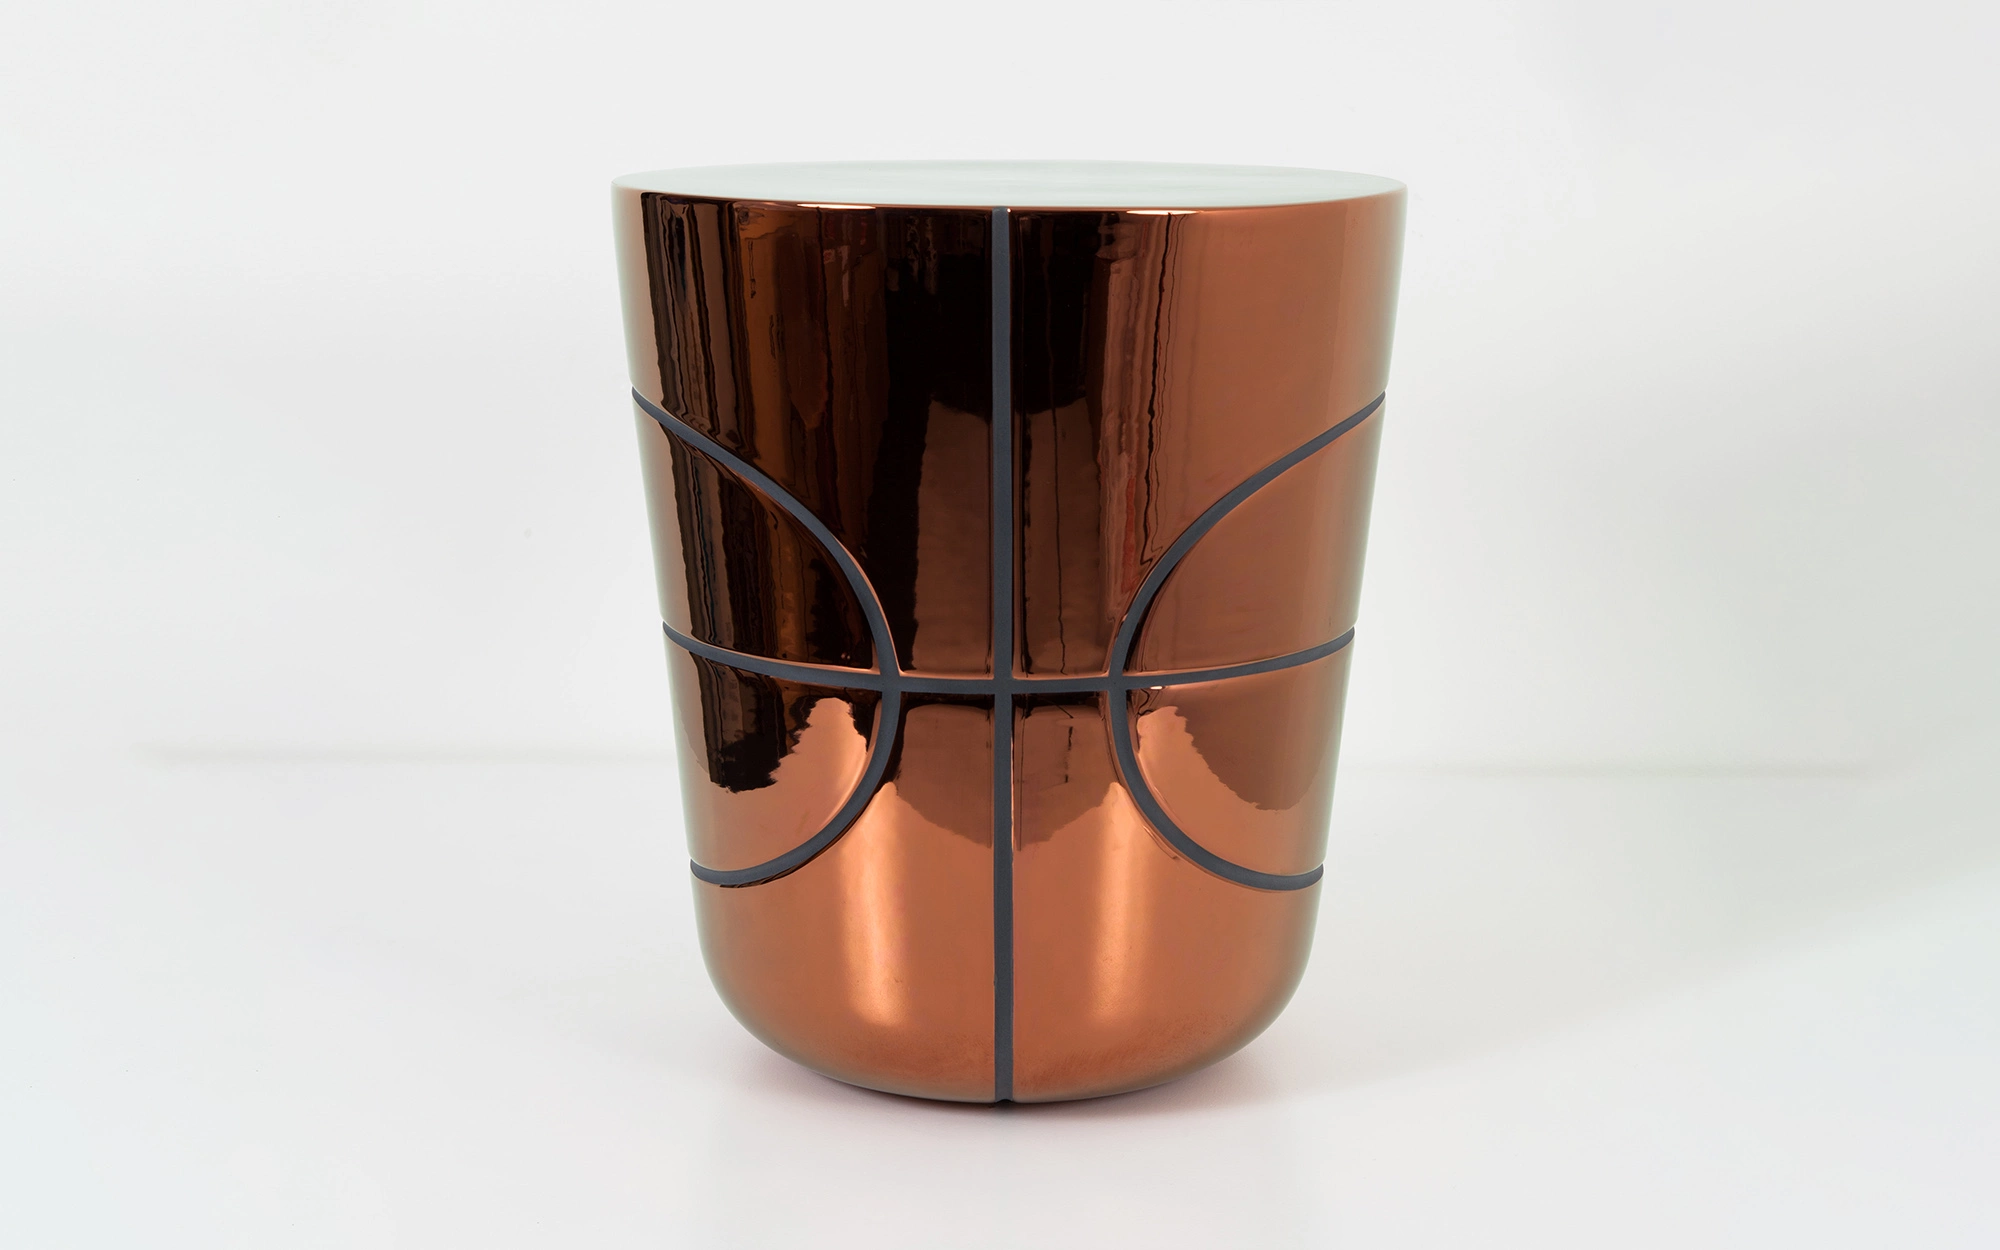 Game On Side Table - Copper Ceramic - Jaime Hayon - Pendant light - Galerie kreo